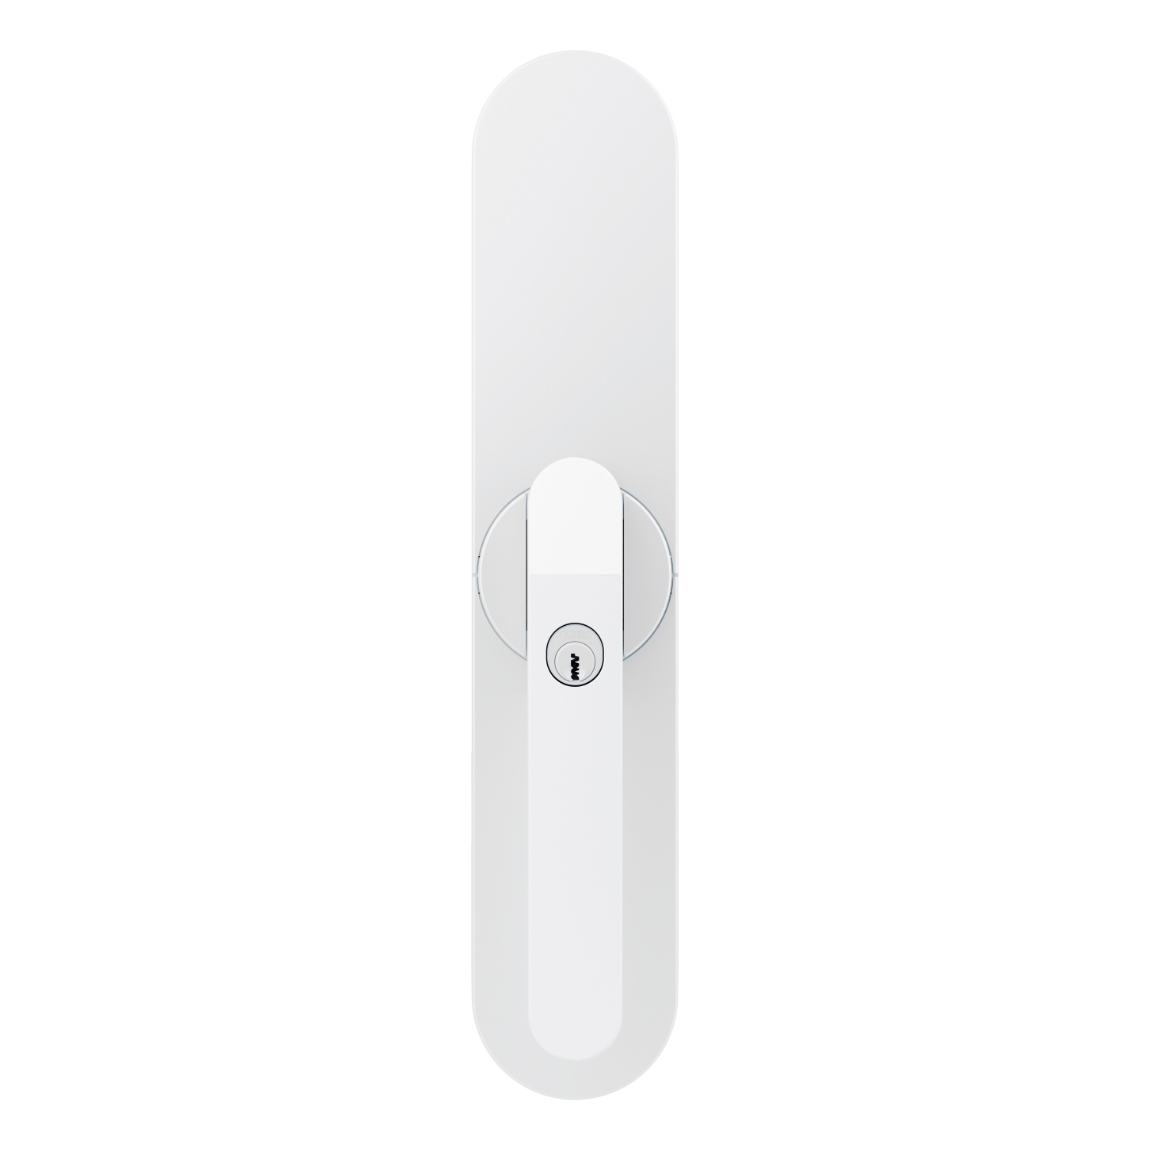 ABUS Wintecto One - Tür-/Fensterantrieb - Weiß